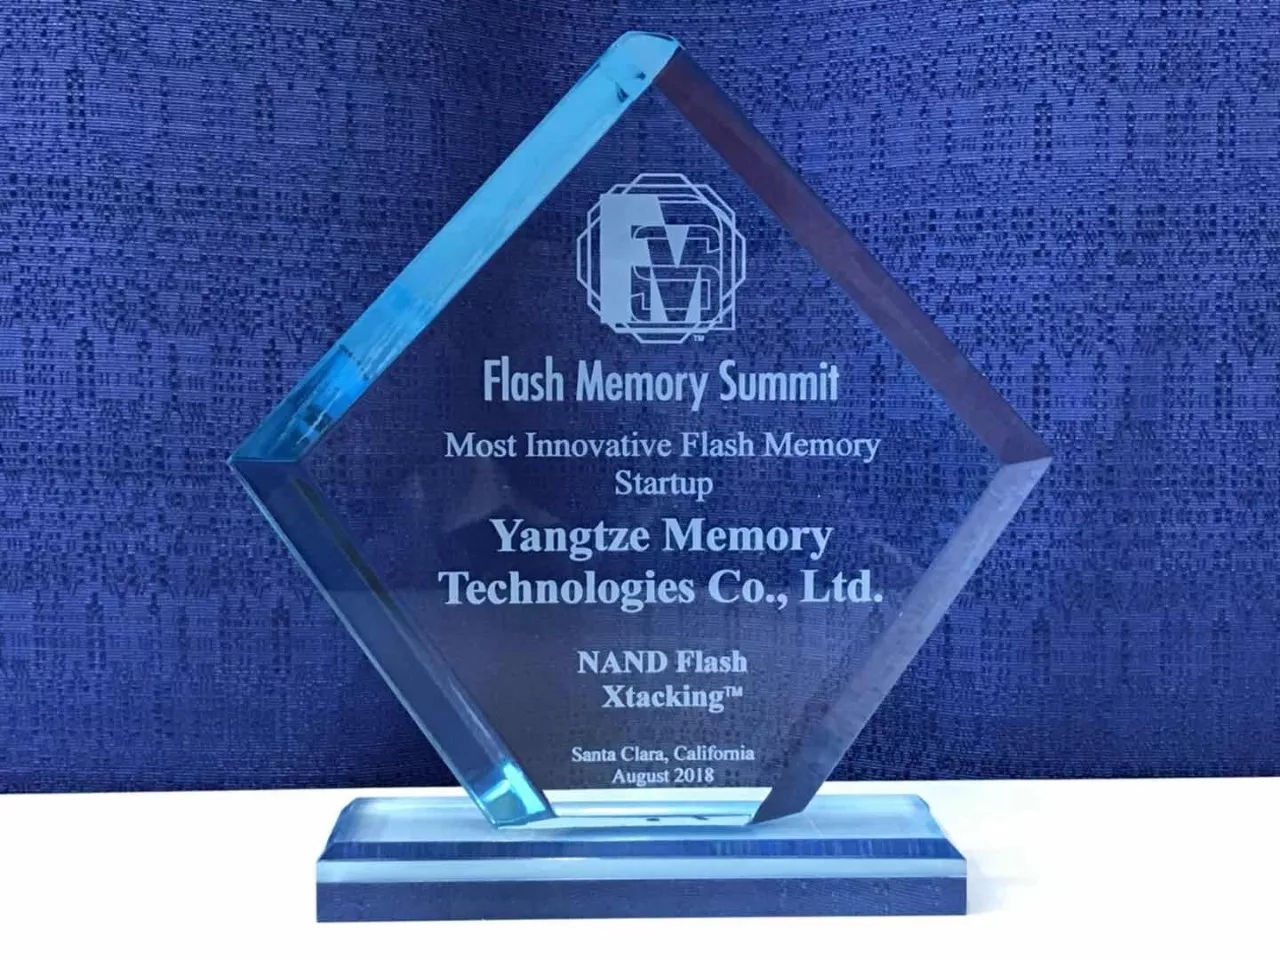 Xtacking received top honors at Flash Memory Summit 2018